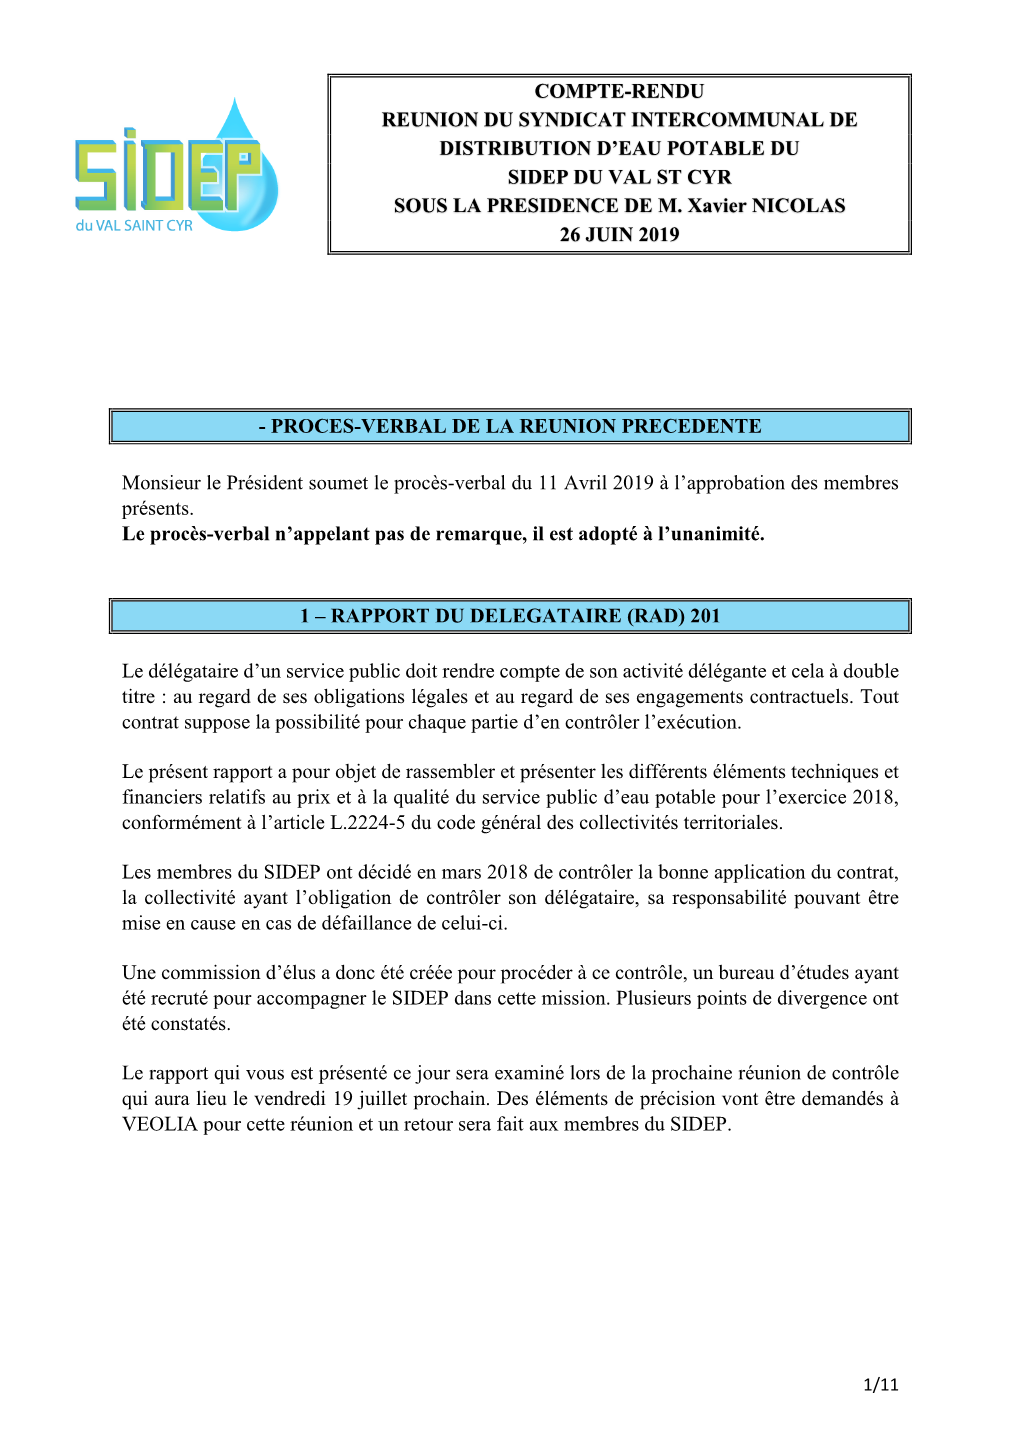 Compte-Rendu Reunion Du Syndicat Intercommunal De Distribution D’Eau Potable Du Sidep Du Val St Cyr Sous La Presidence De M